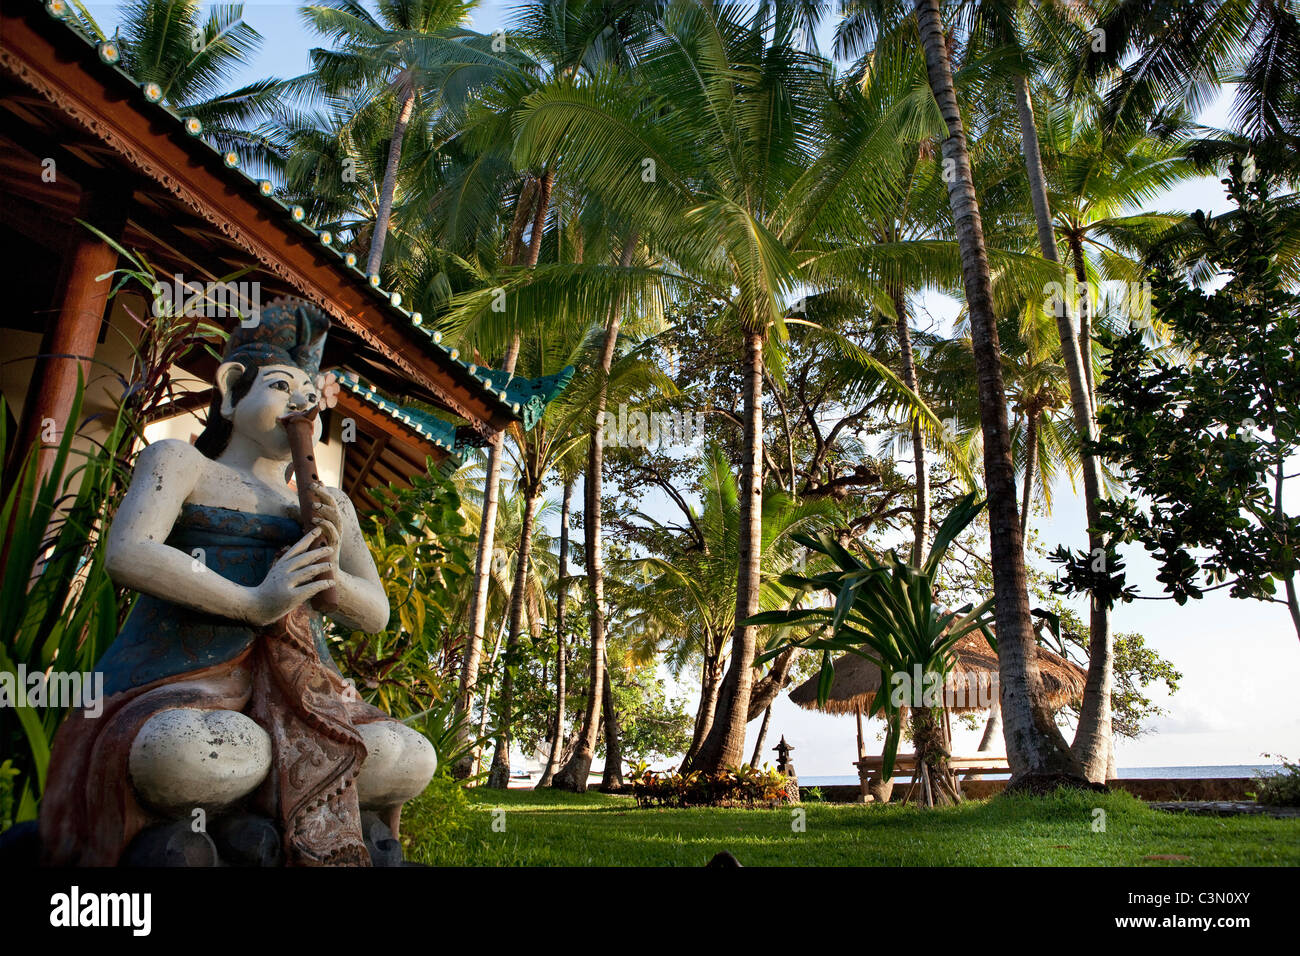 Indonesia, isola di Bali, vicino al villaggio di Tejakula, Gaia Oasis Resort. Statua di fronte al bungalow. Foto Stock